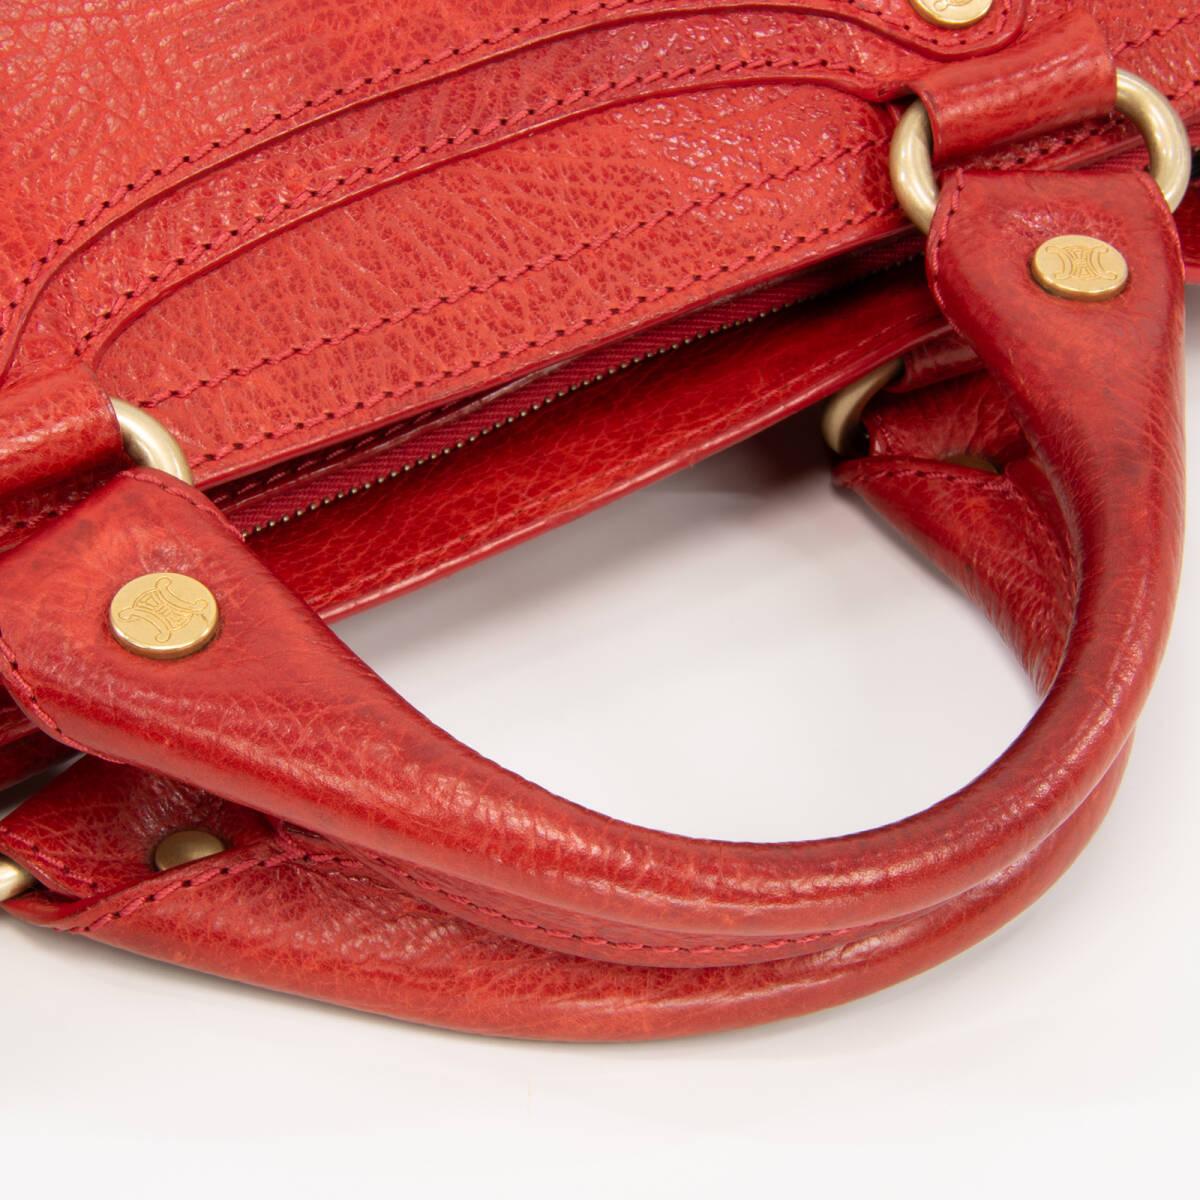 【全額返金保証・送料無料・良品】セリーヌ・ハンドバッグ(ブギーバッグ・人気・レア・珍しい・赤・レッド・鞄・バック・E316)_画像8